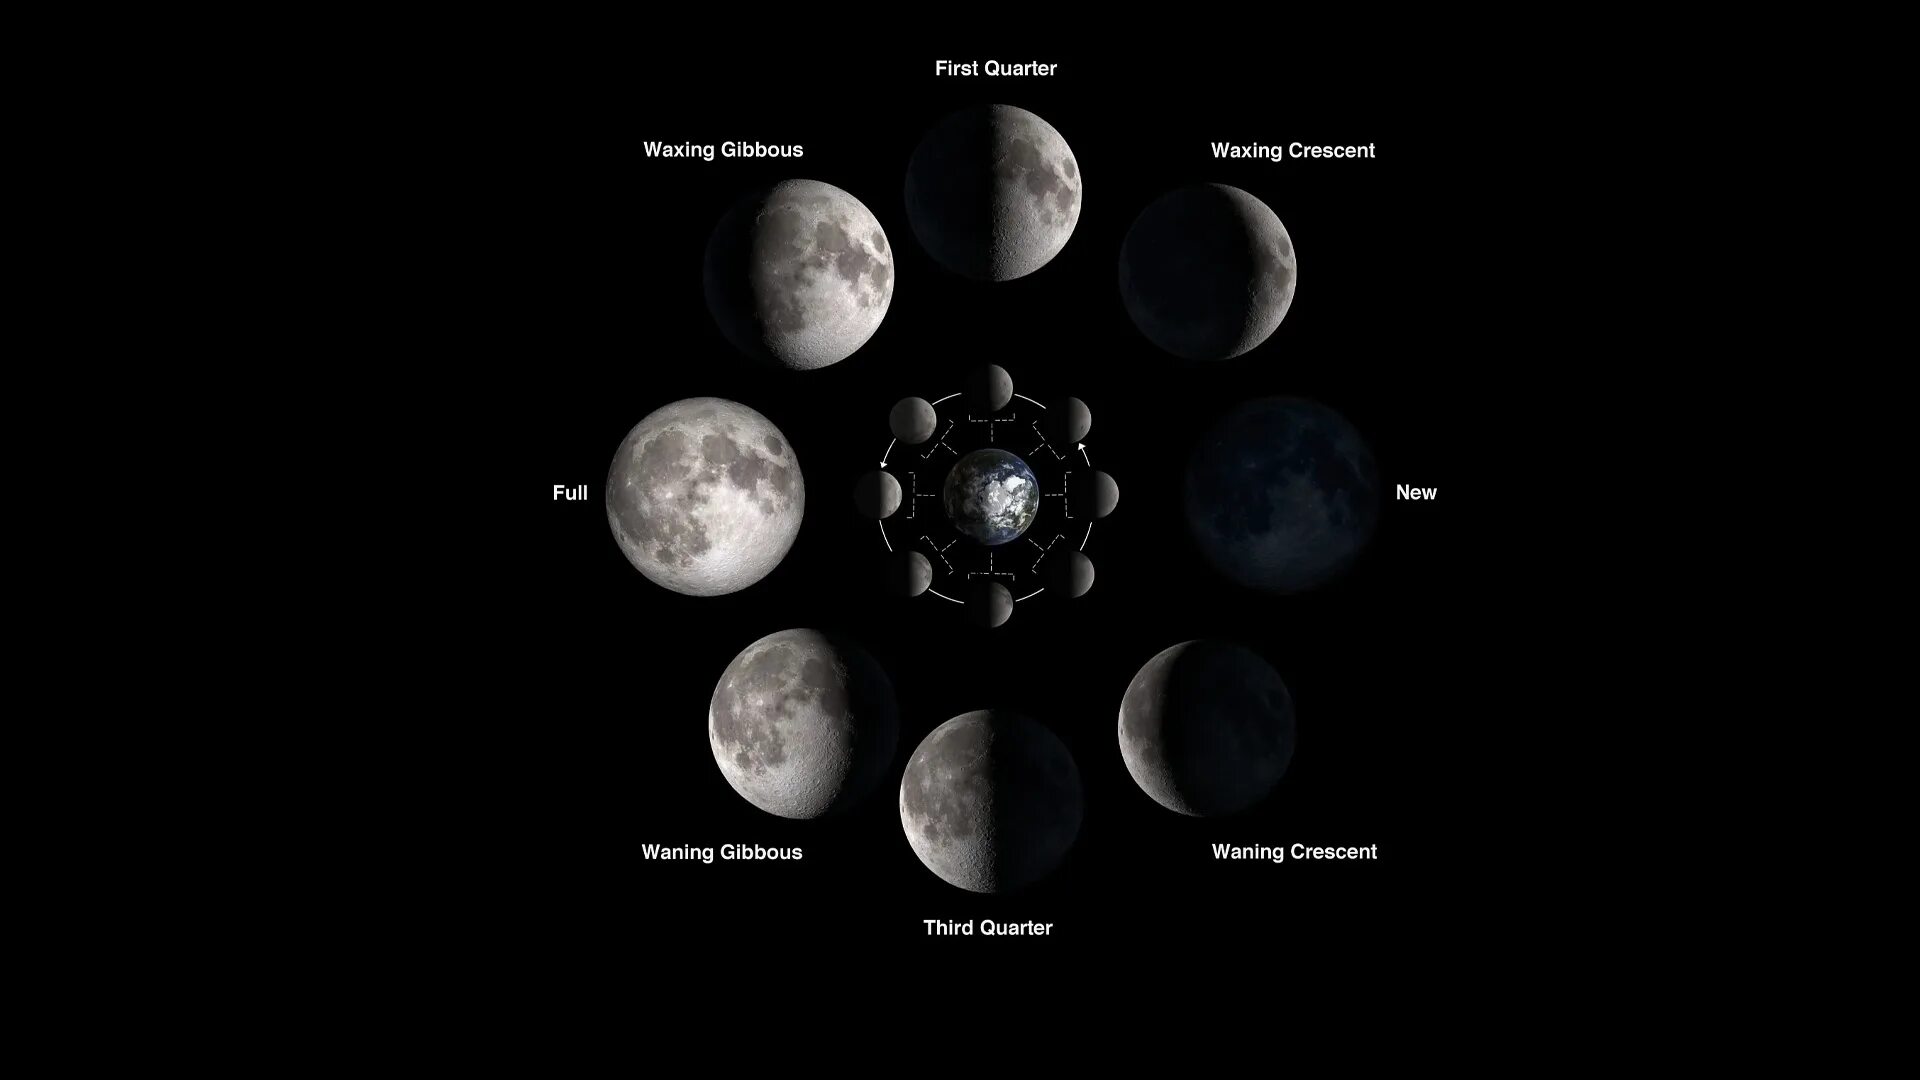 Синодический месяц Луны. Полный цикл смены лунных фаз составляет. Фаза Луны первая четверть. Фазы Луны синодический и сидерический месяцы.